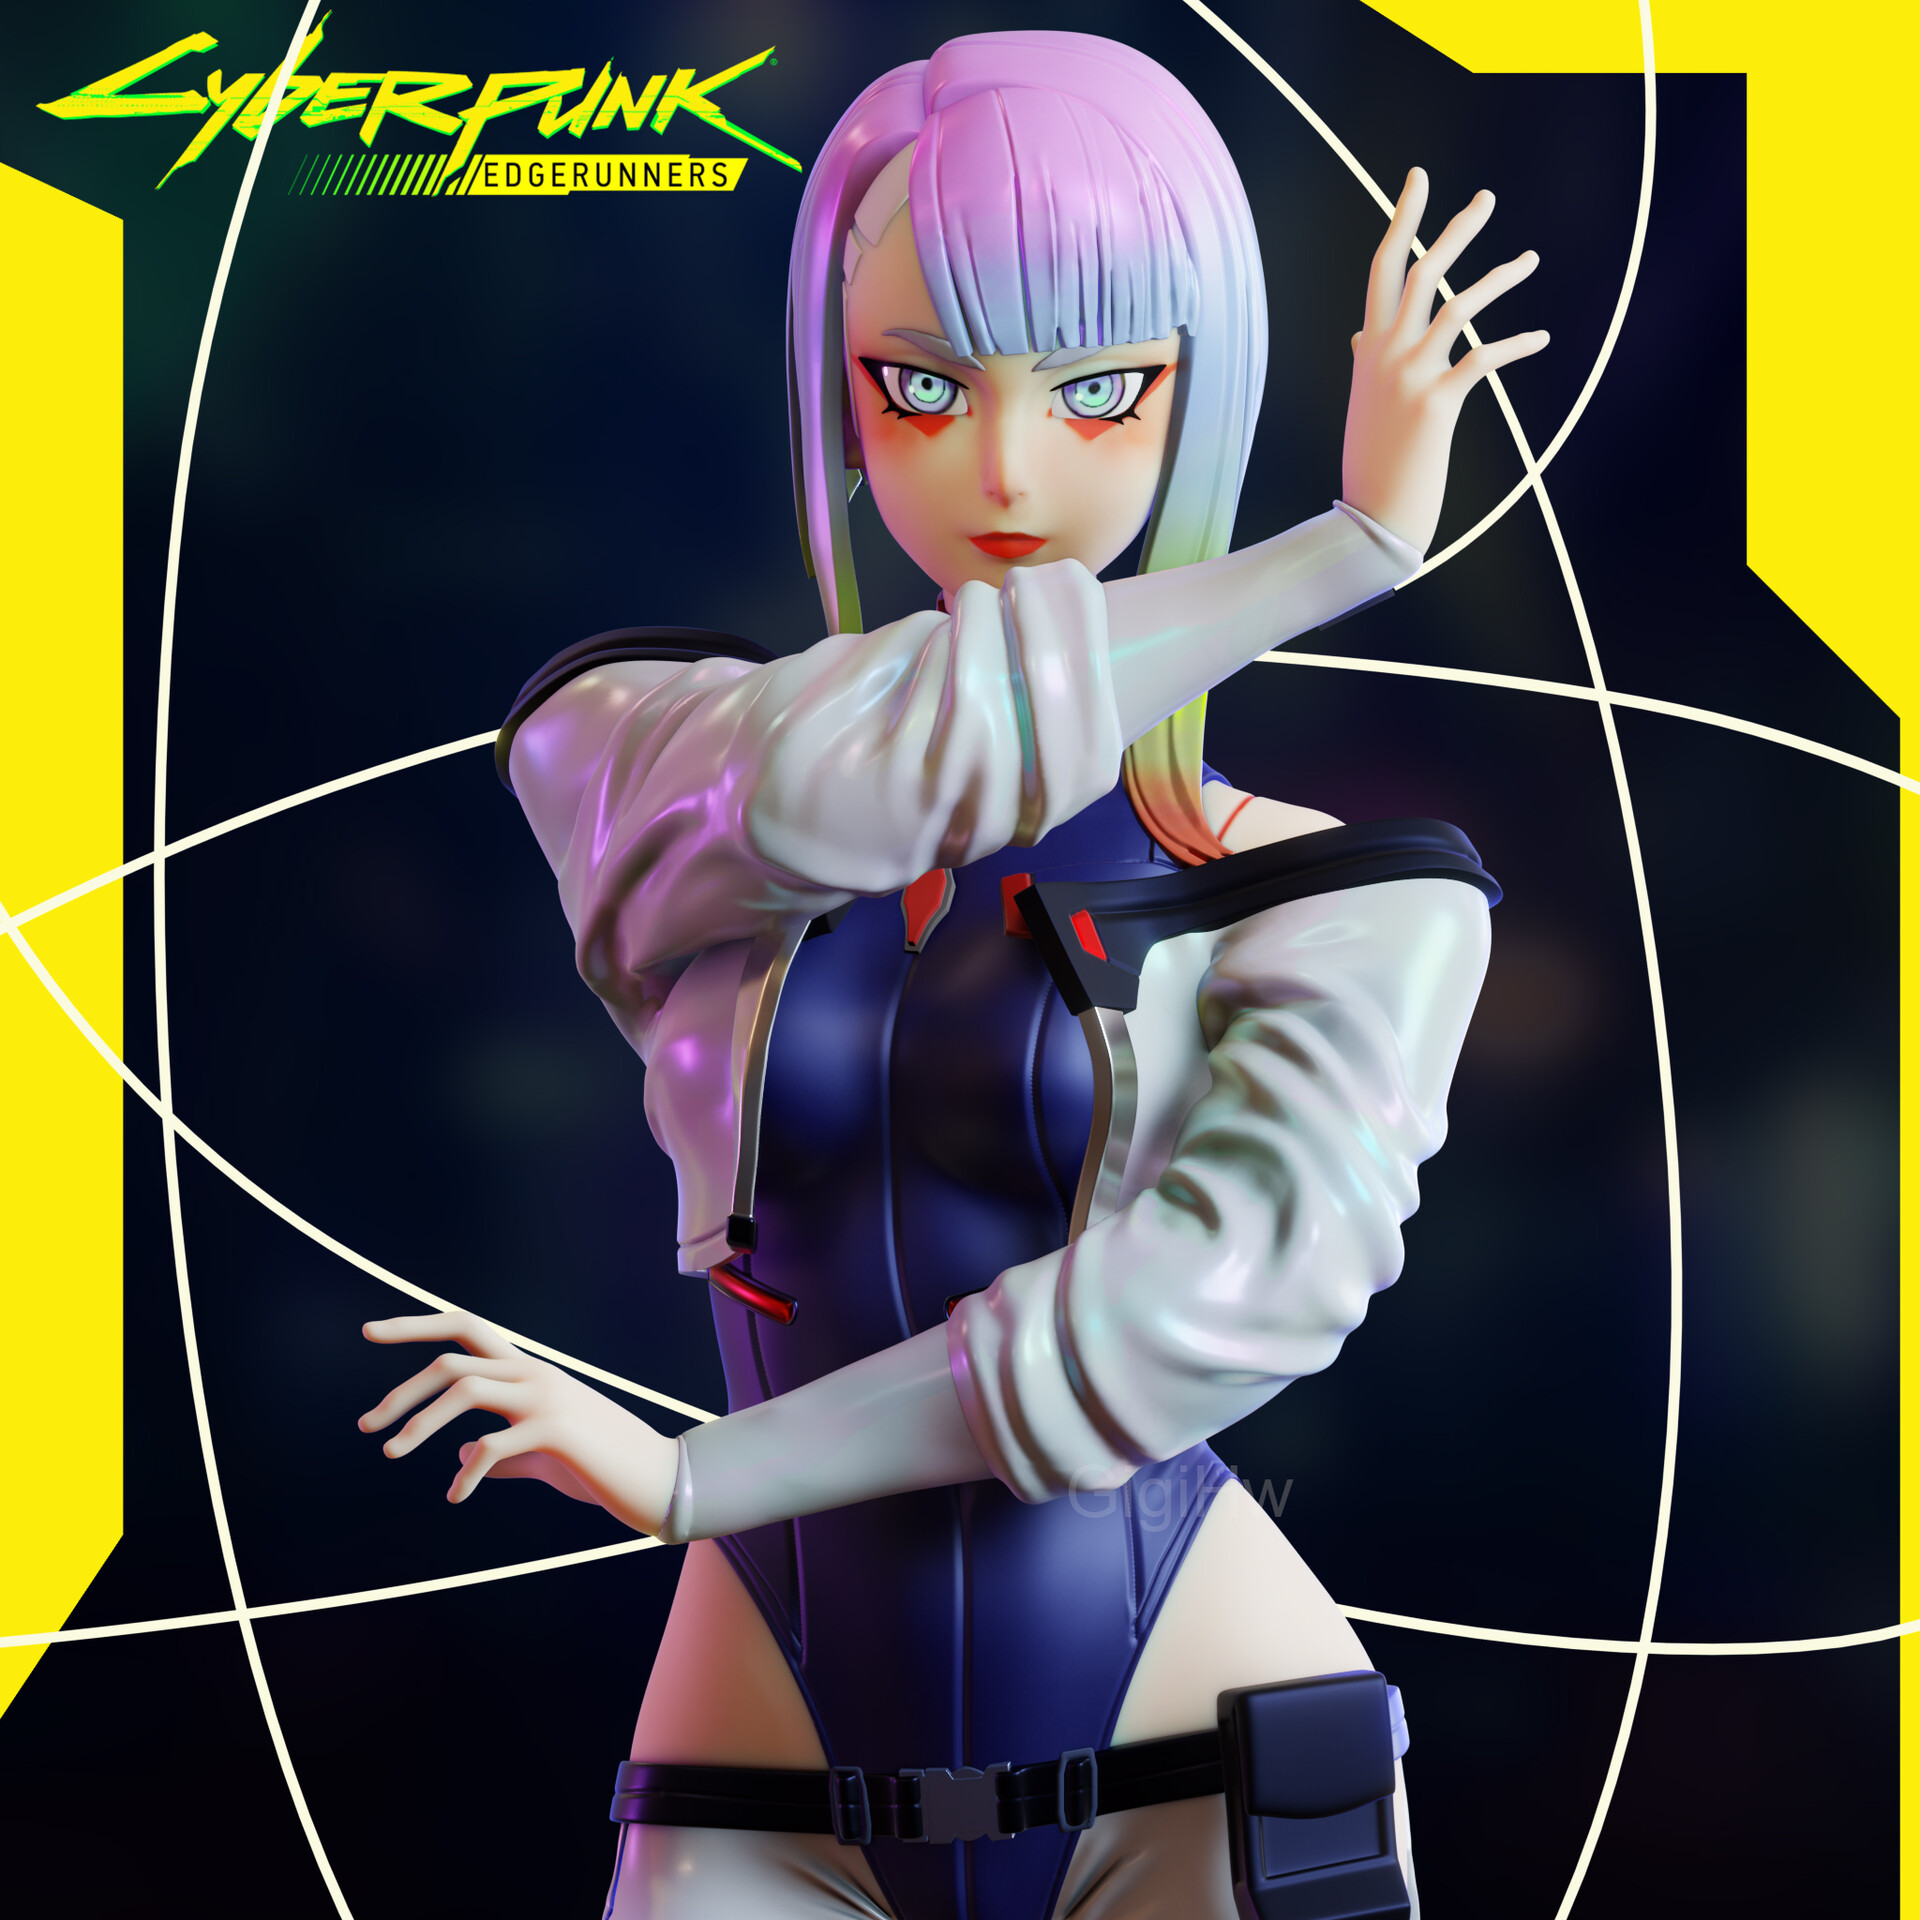 ArtStation - Lucy - Cyberpunk Edgerunners